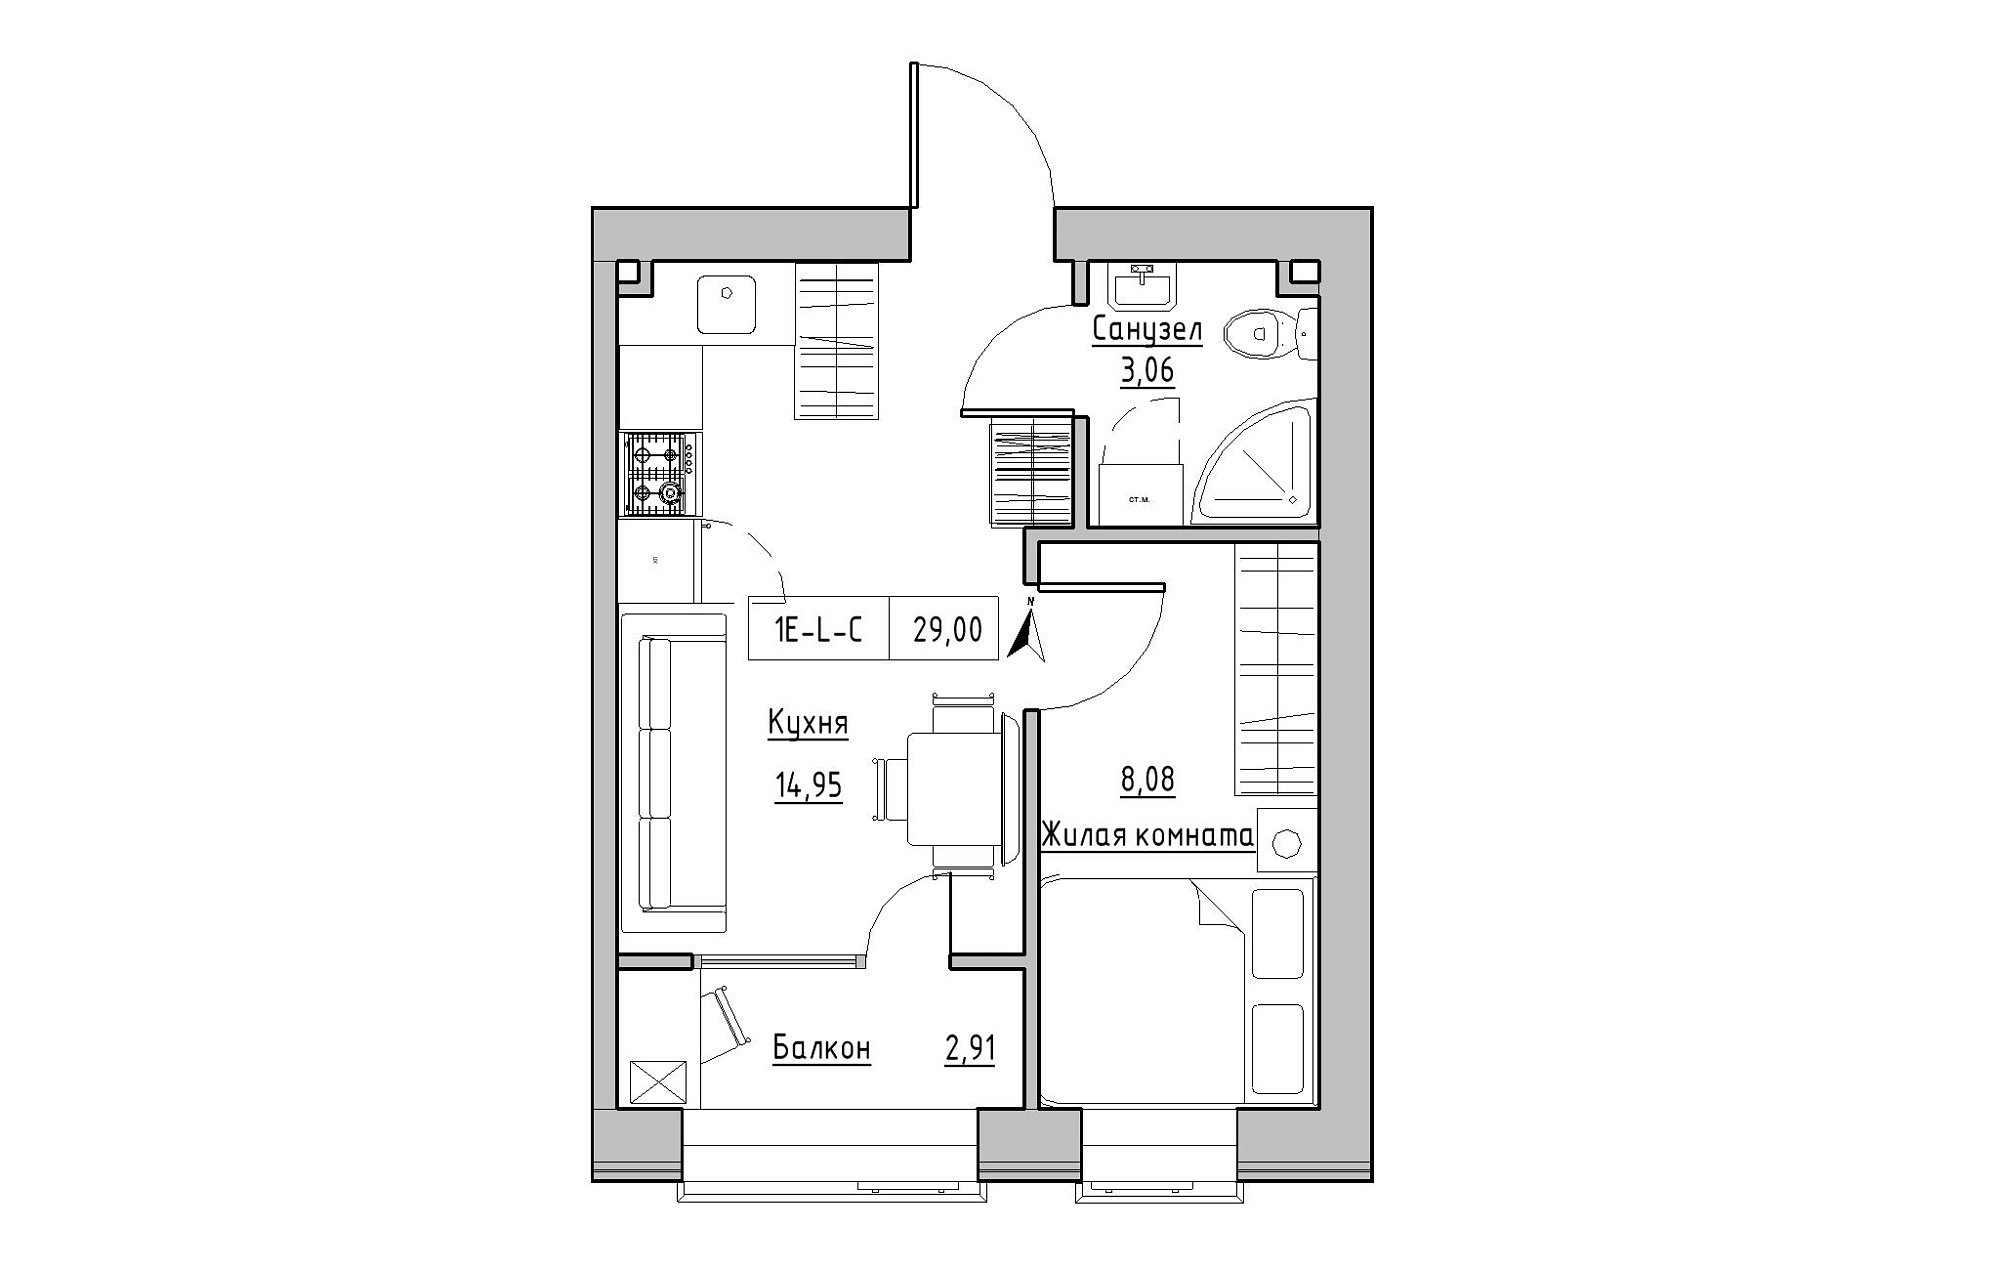 Планування 1-к квартира площею 29м2, KS-019-04/0009.